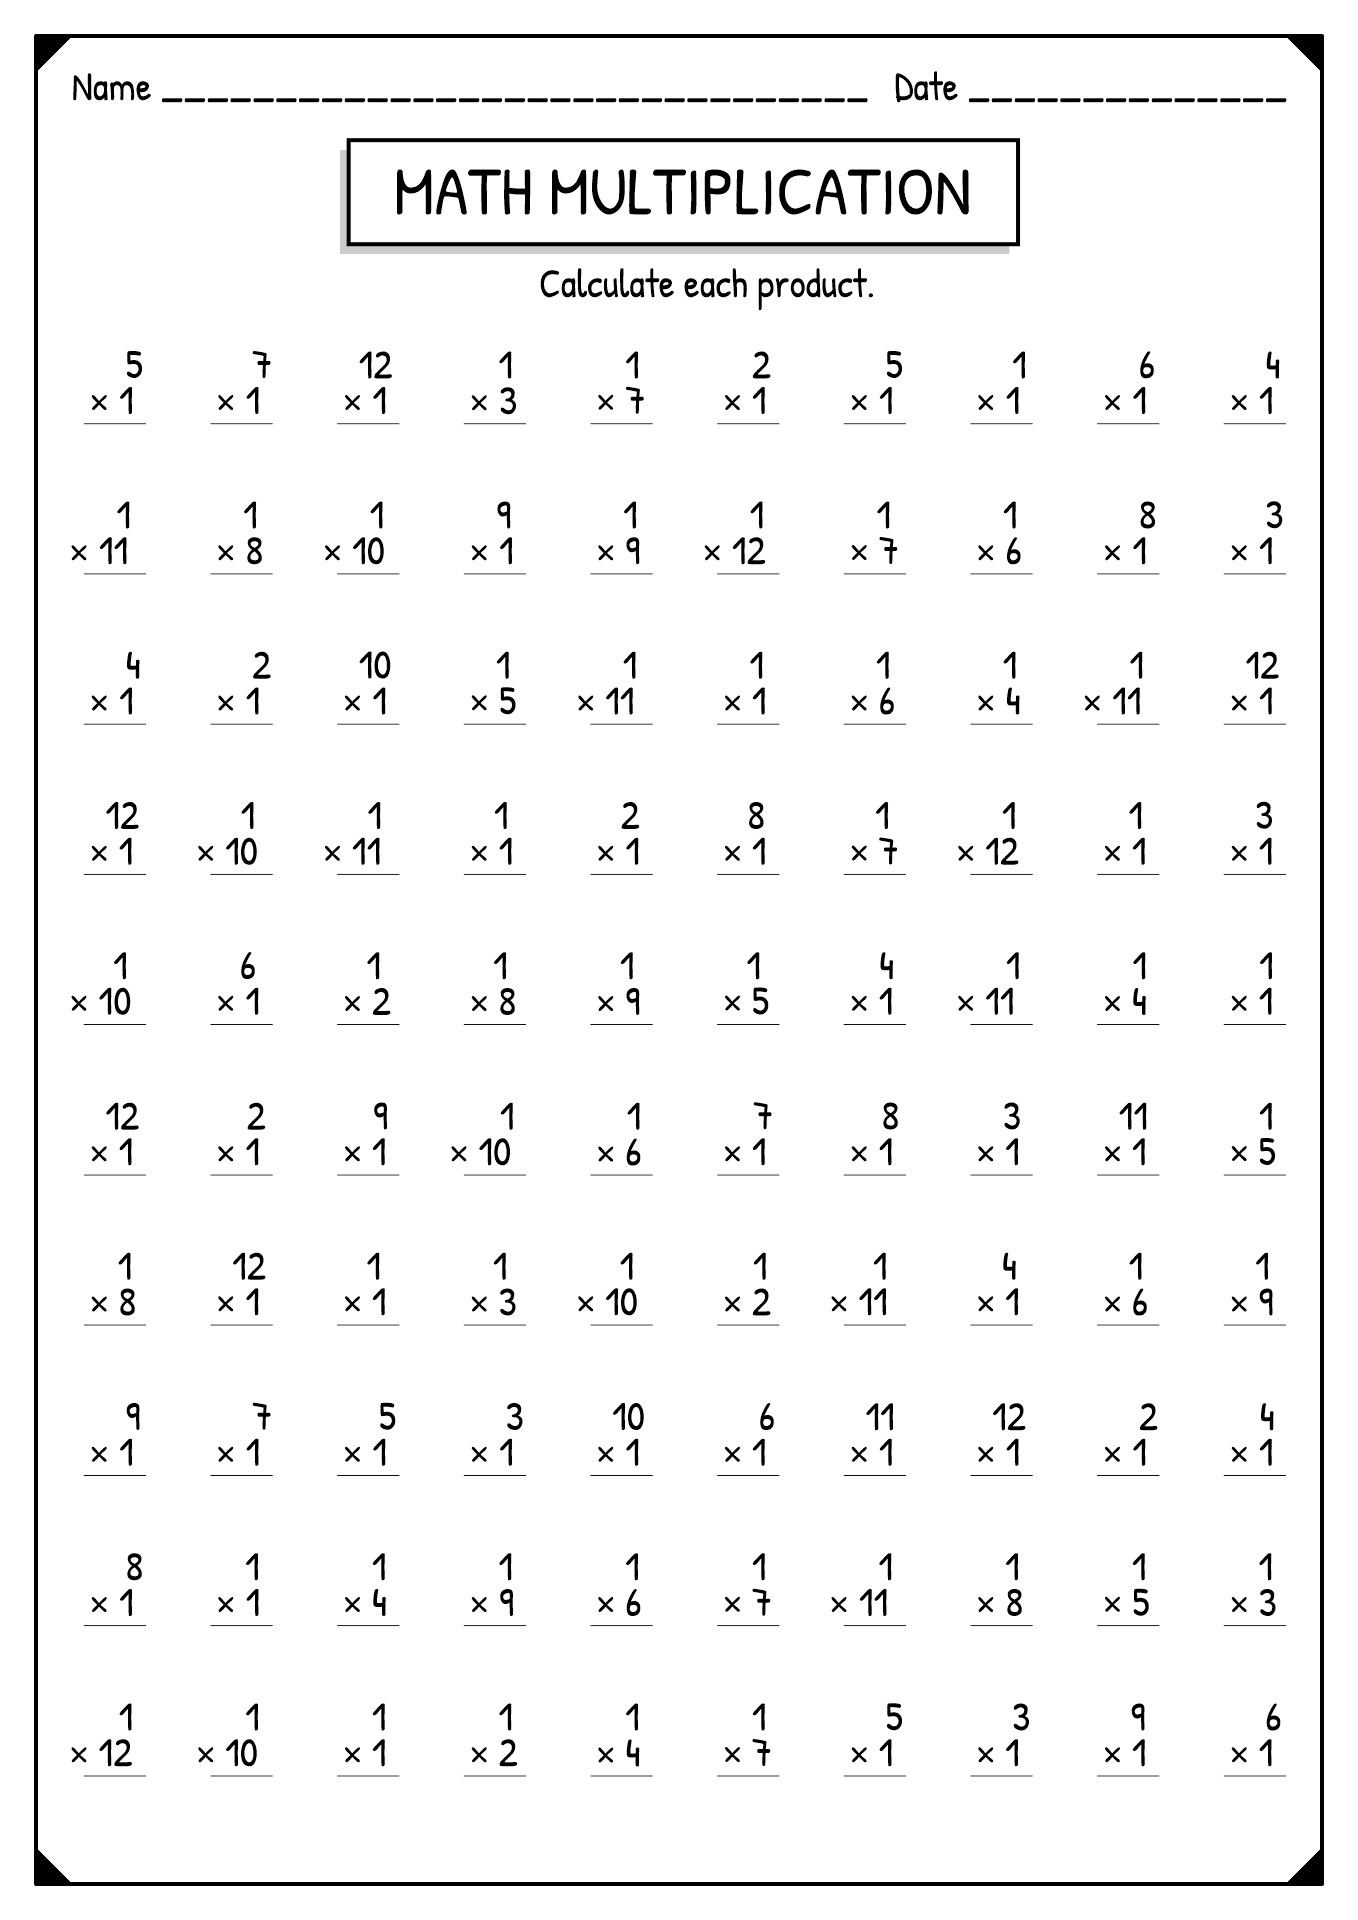 11-best-images-of-multiplication-worksheets-4s-1-multiplication-worksheet-printable